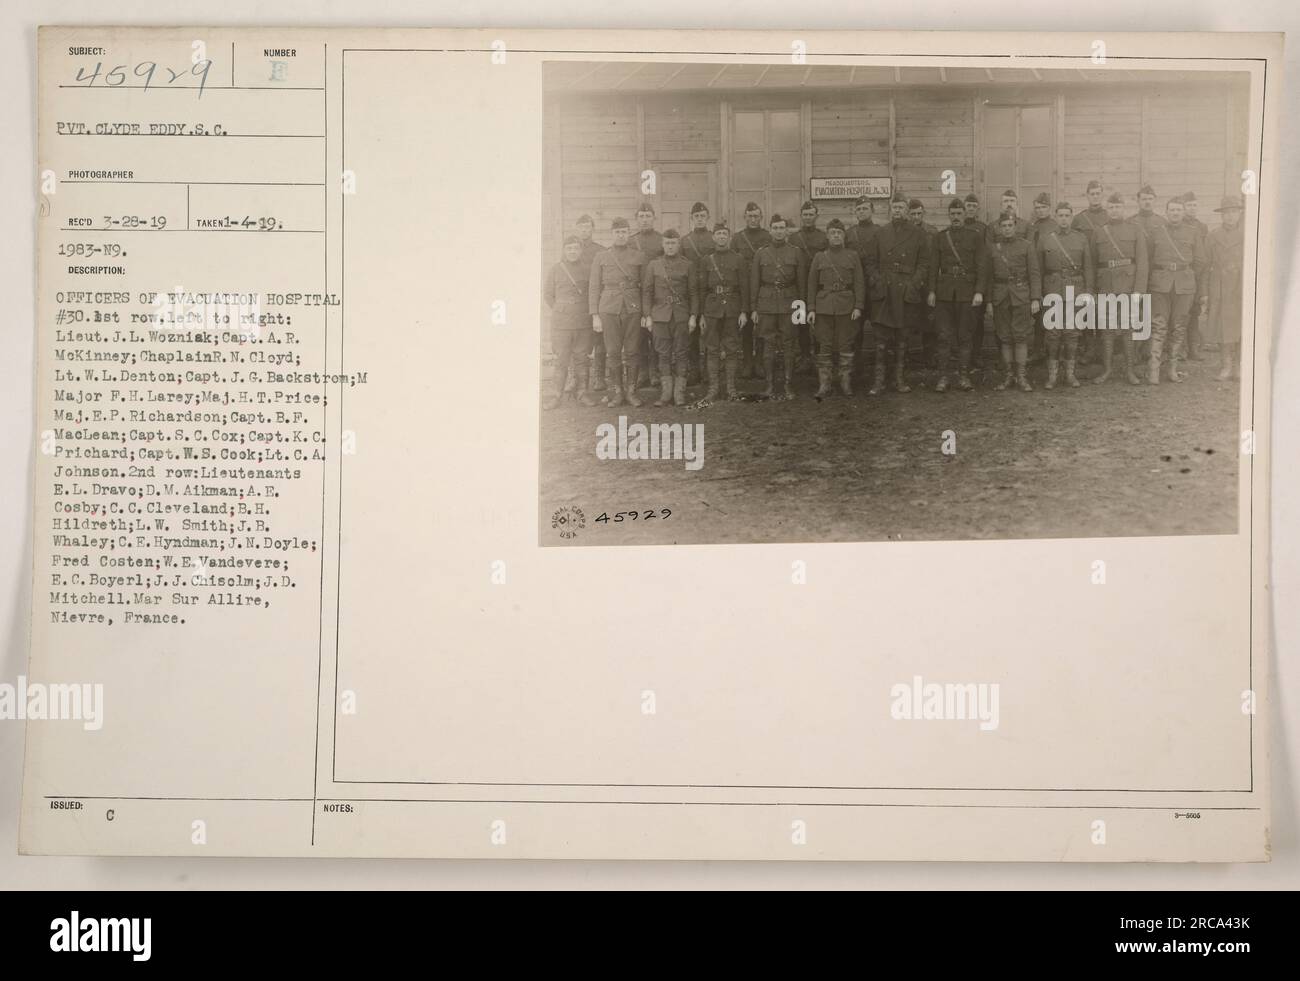 Officers of Evacuation Hospital #30. Front row, left to right: Lieut. J. L. Wozniak; Capt. A. R. McKinney; Chaplain R. N. Cloyd; Lt. W. L. Denton; Capt. J. G. Backstrom; Major F.H. Larey; Major H. T. Price; Major E. P. Richardson; Capt. B.F. MacLean; Capt. S. C. Cox; Capt. K. C. Prichard; Capt. W. S. Cook; Lt. C. A. Johnson. Second row: Lieutenants E.L. Dravo; D. M. Aikman; A. E. Cosby; C. C. Cleveland; B. H. Hildreth; L. W. Smith; J. B. Whaley; C. E. Hyndman; J. M. Doyle; Fred Costen; W. E. Vandevere; E.C. Boyer; J. J. Chisolm; J. D. Mitchell. Location: Mar Sur Allire, Nievre, France. Stock Photo